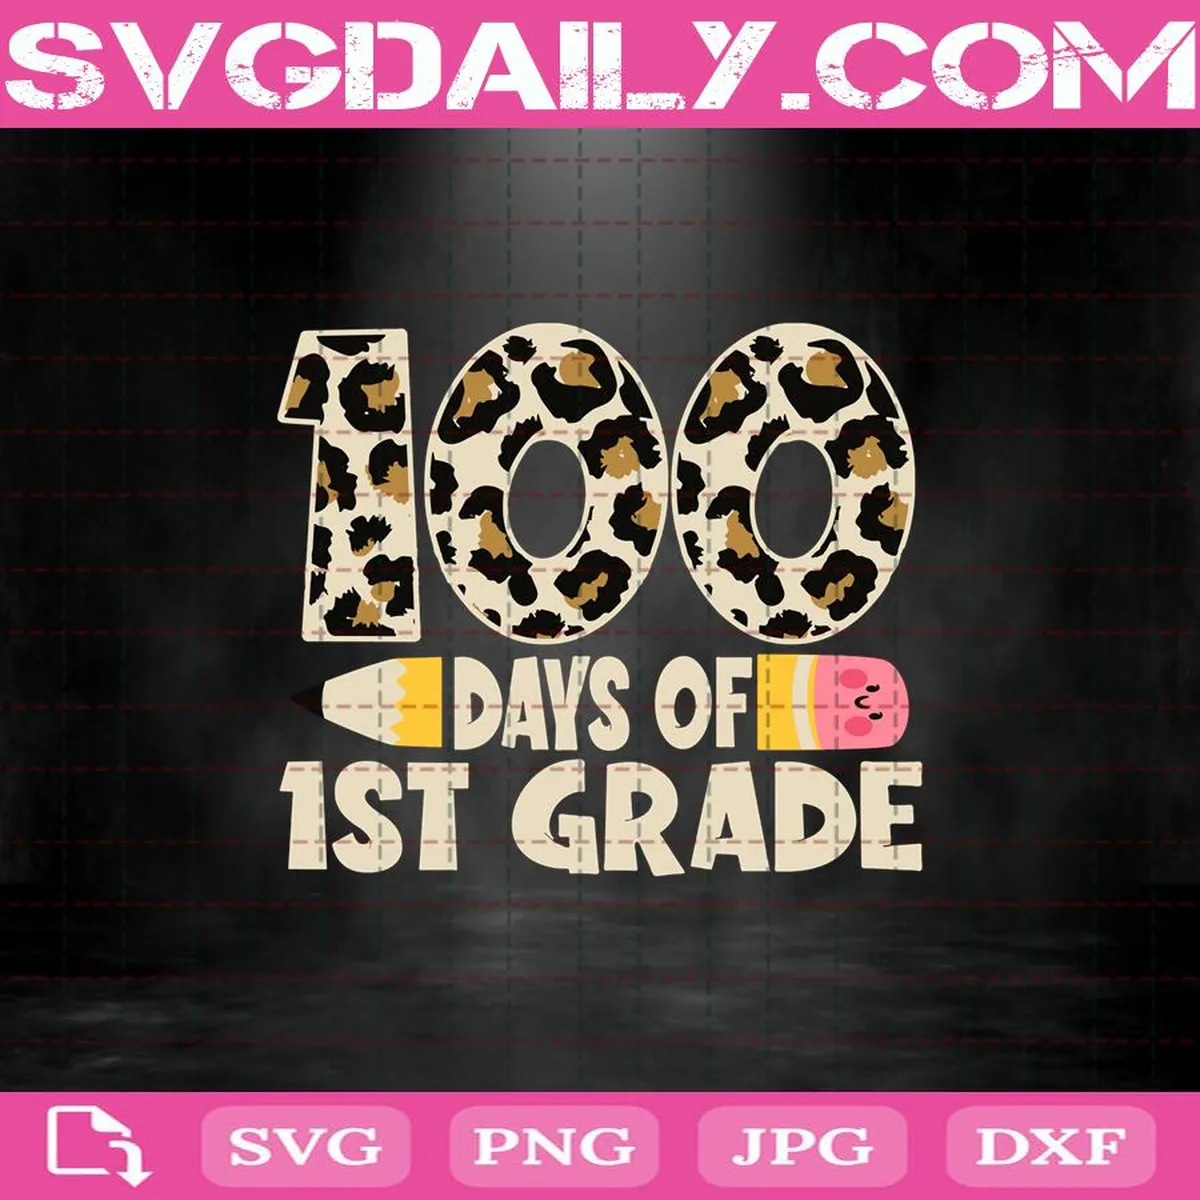 100 Days Of 1st Grade Svg, First Grade Teacher Student Svg, 100th Day Of School Svg, 1st Grade Svg, School Svg